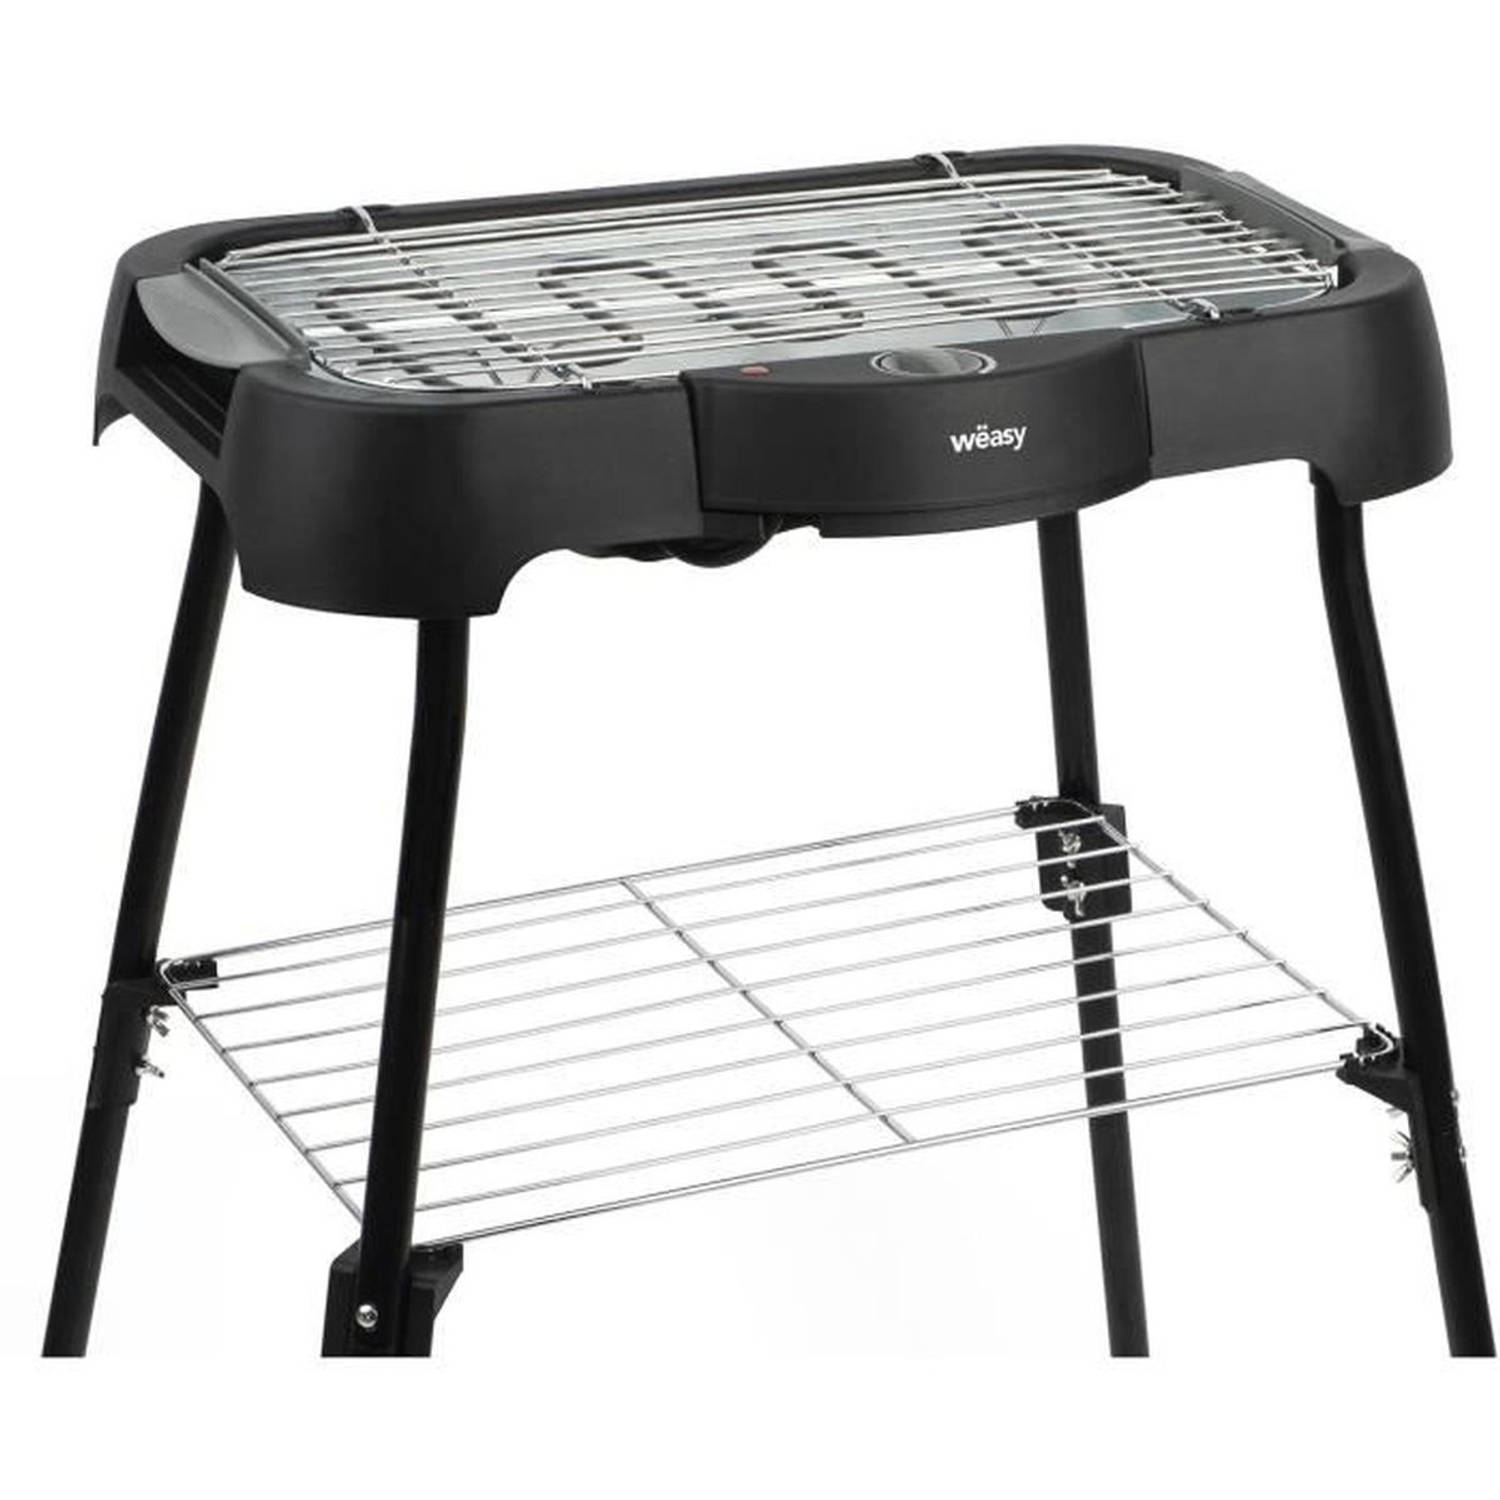 WEASY GBE42 Elektrische BBQ grill op tafel of op pootjes - 41,5x24cm - Regelbare temperatuur - 2000W